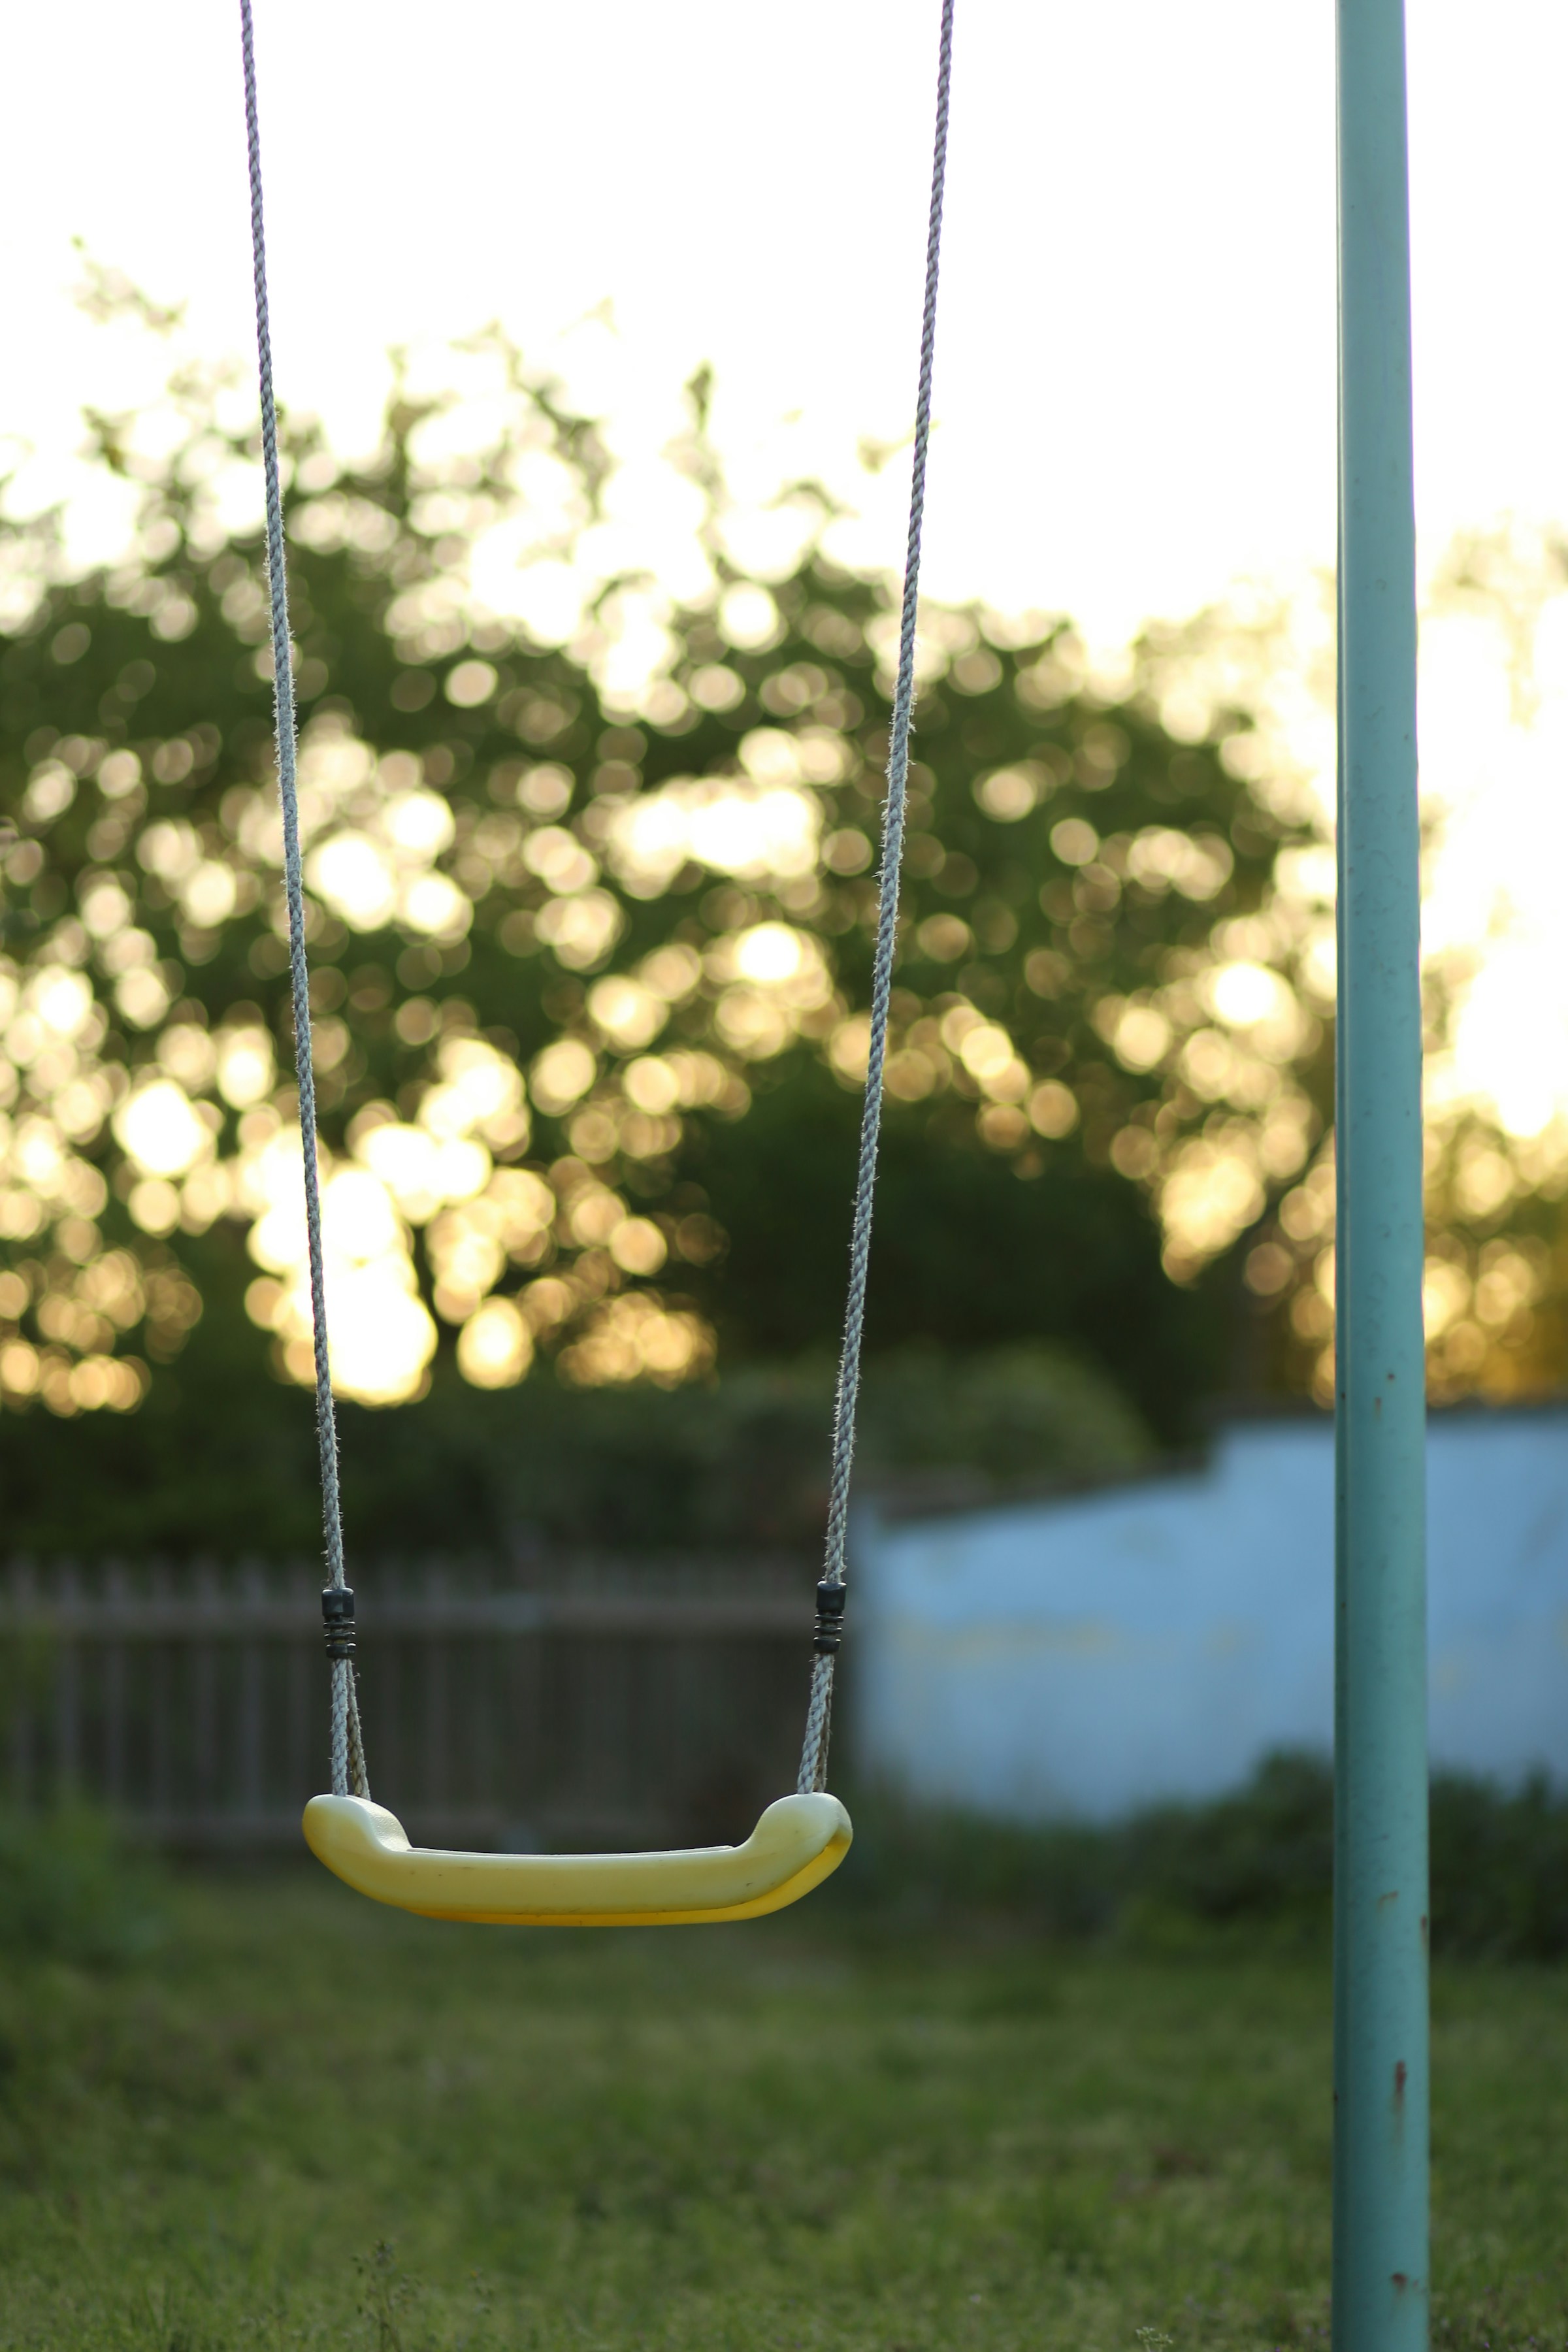 A yellow swing | Source: Unsplash